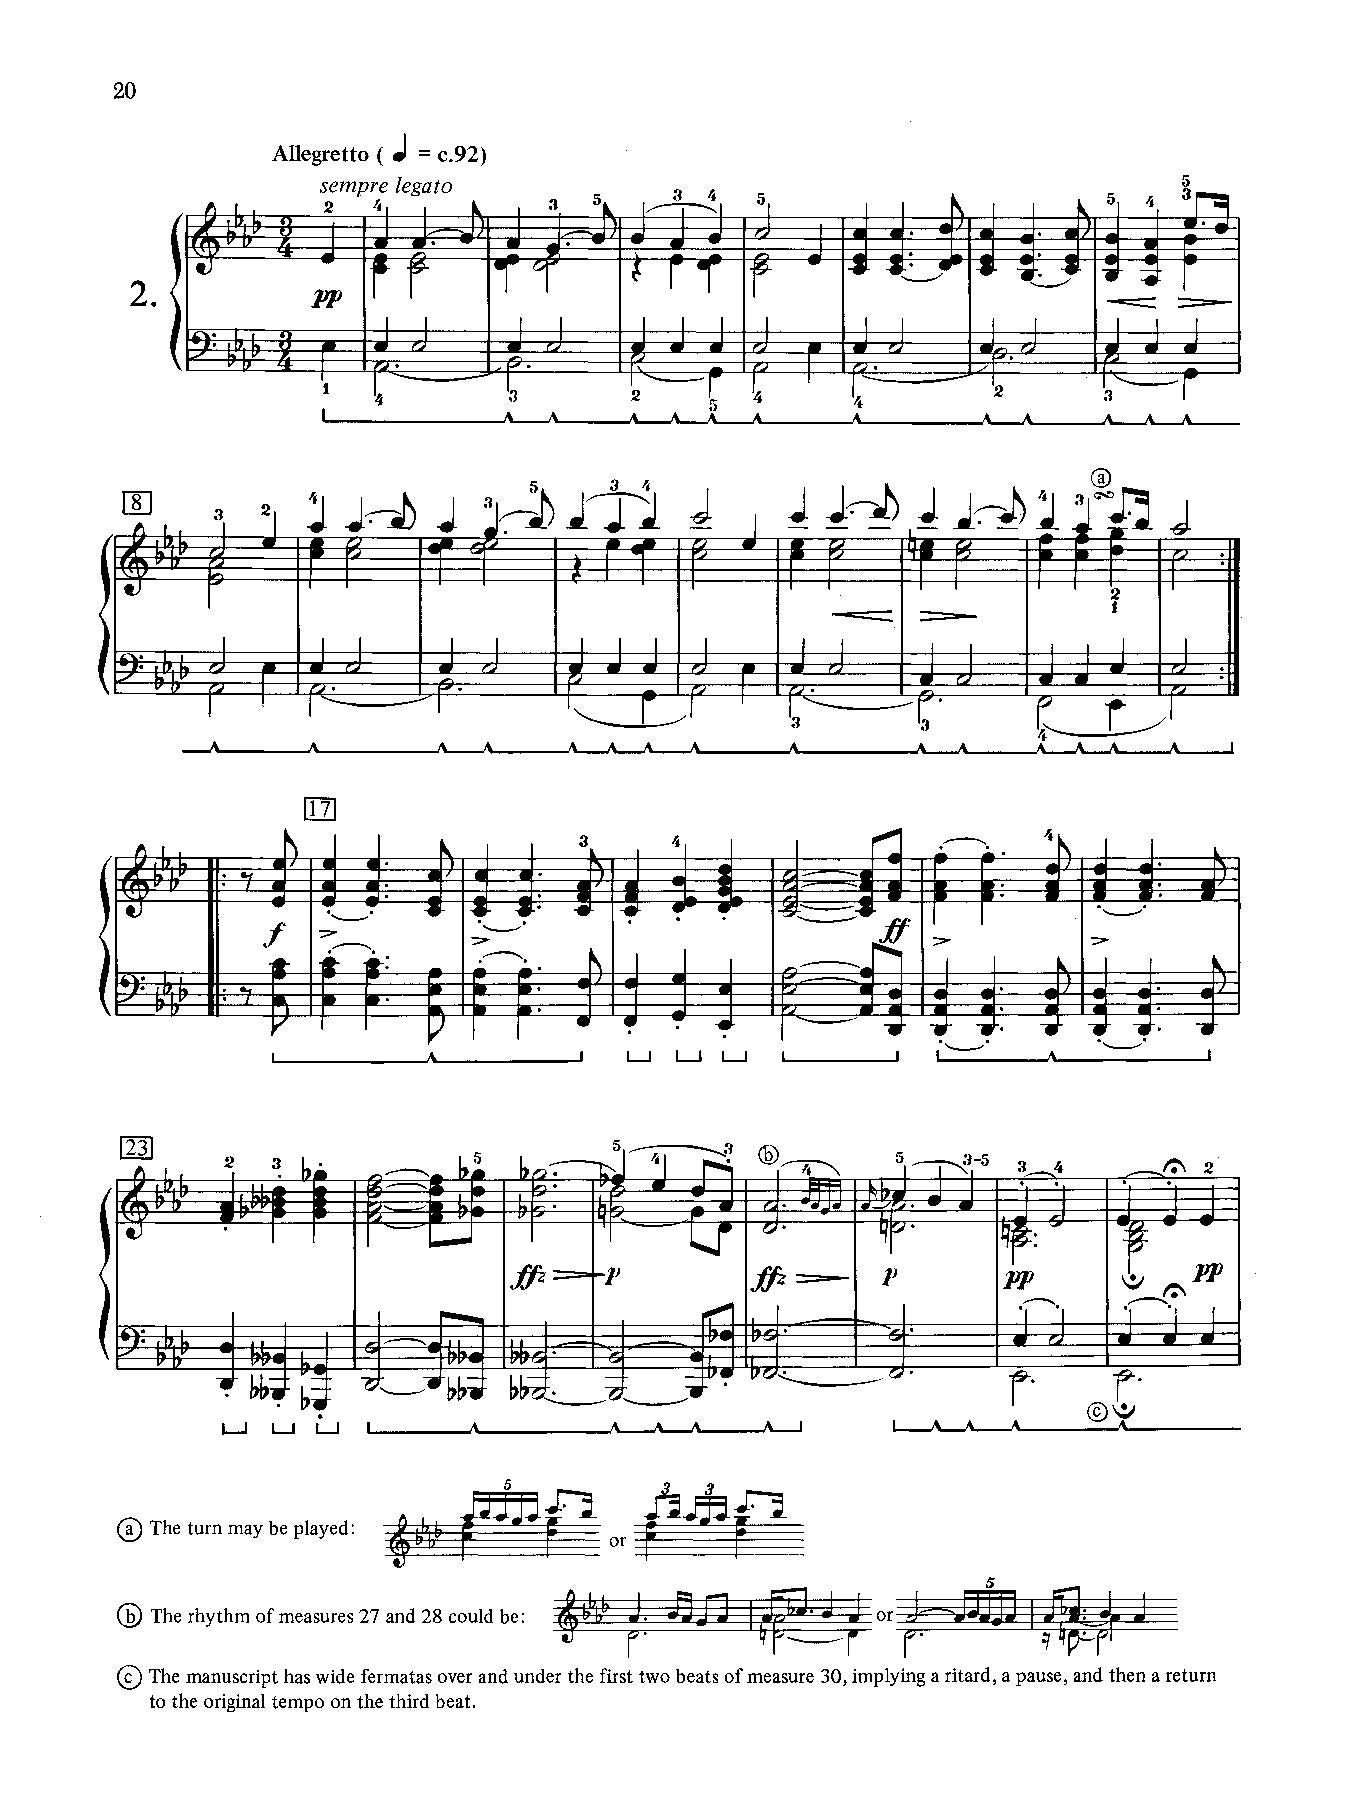 Schubert: Impromptus Op. 142 for Piano